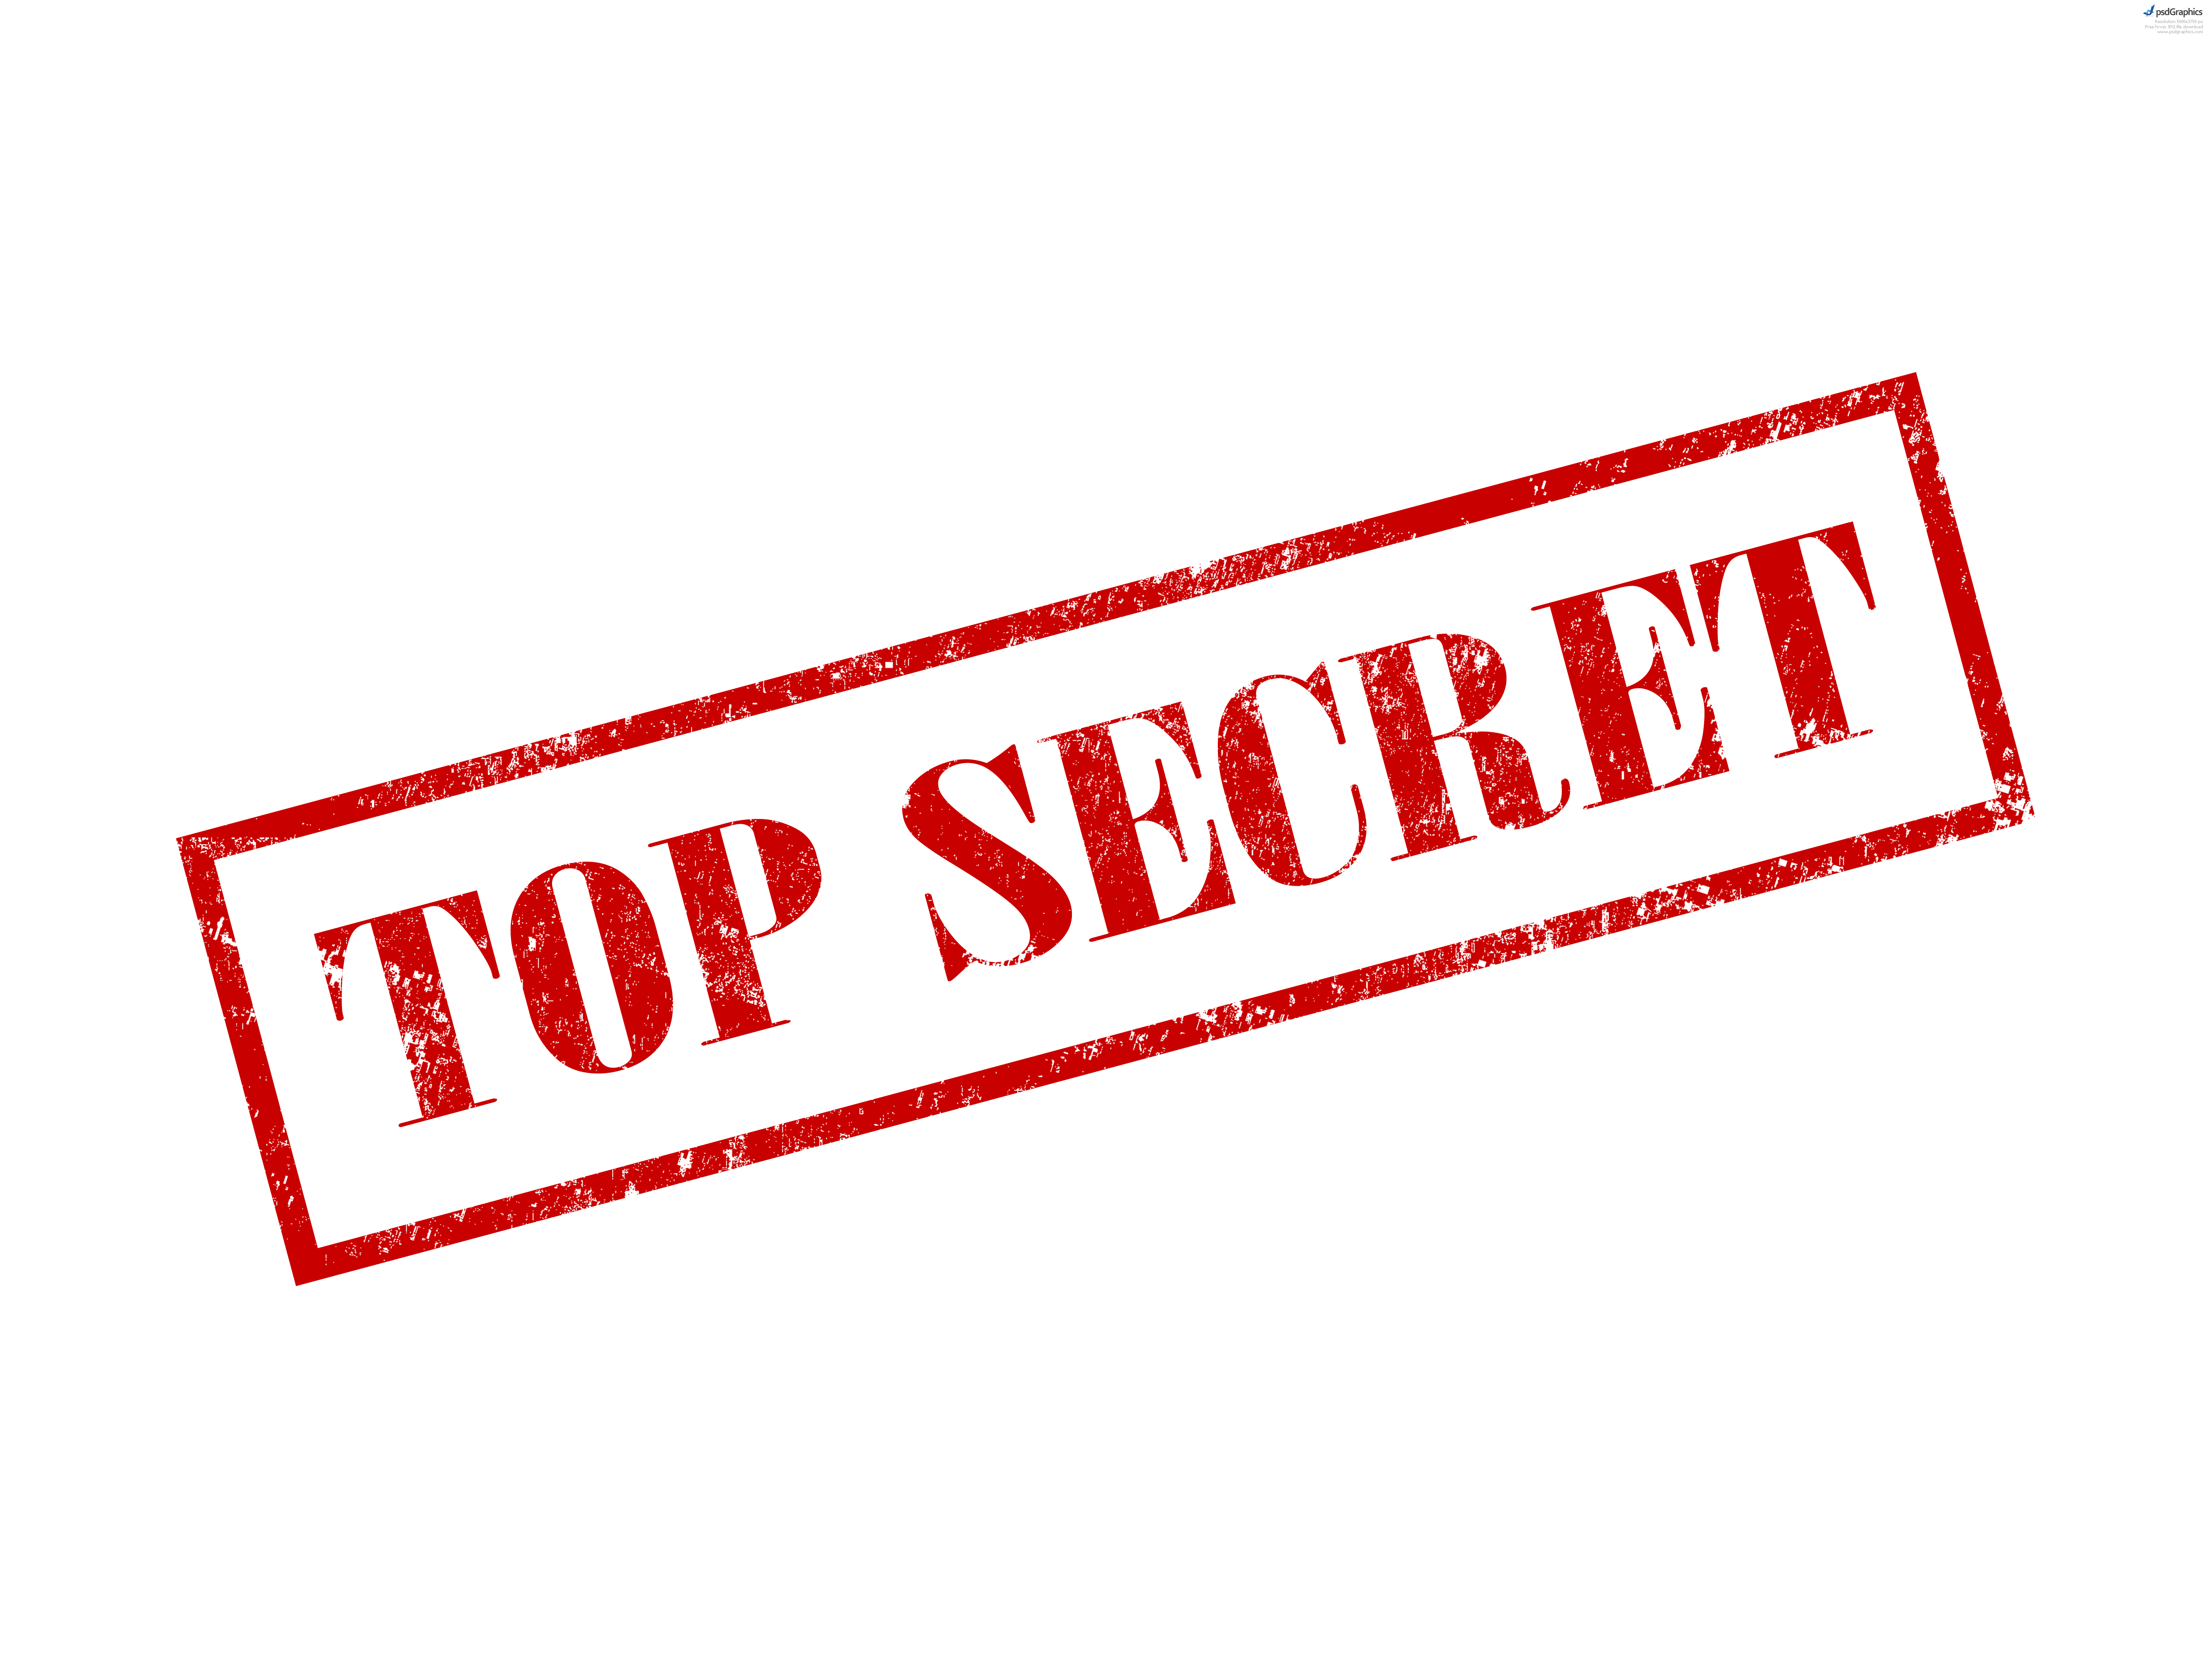 Top Secret Stamp And Envelope - Top Secret Clipart